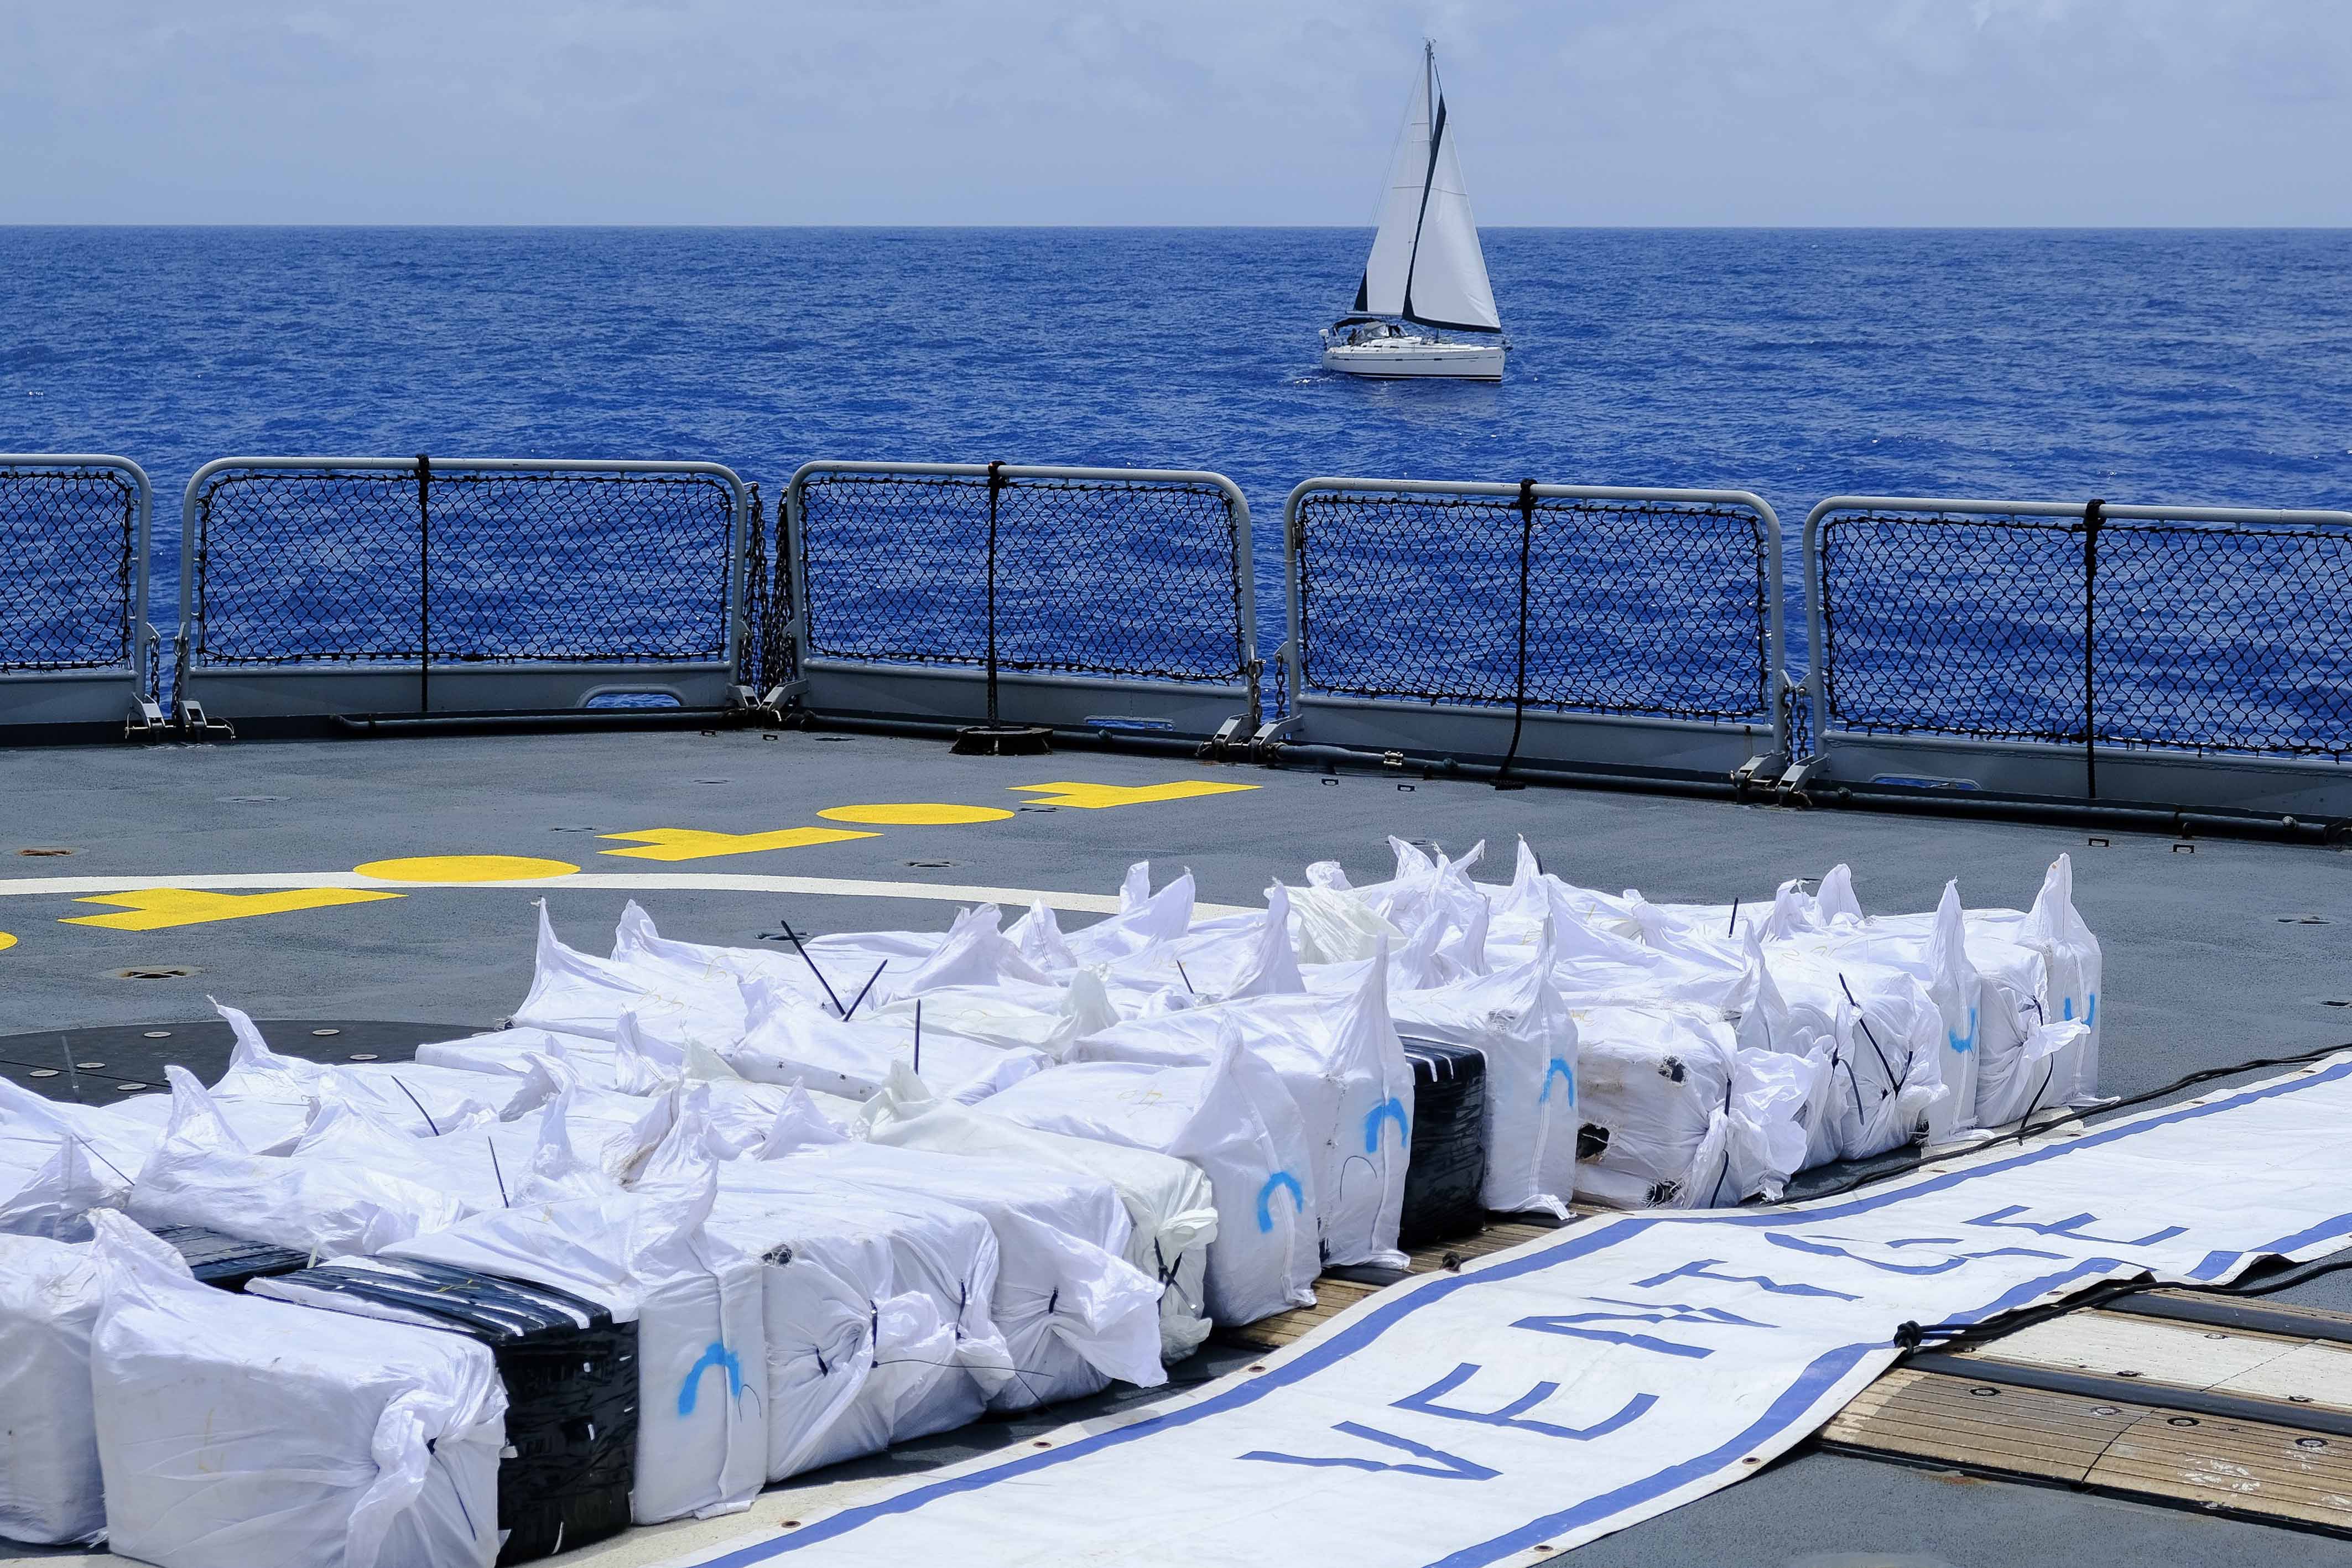     Plus de 2 tonnes de cocaïne saisies en zone maritime des Antilles

